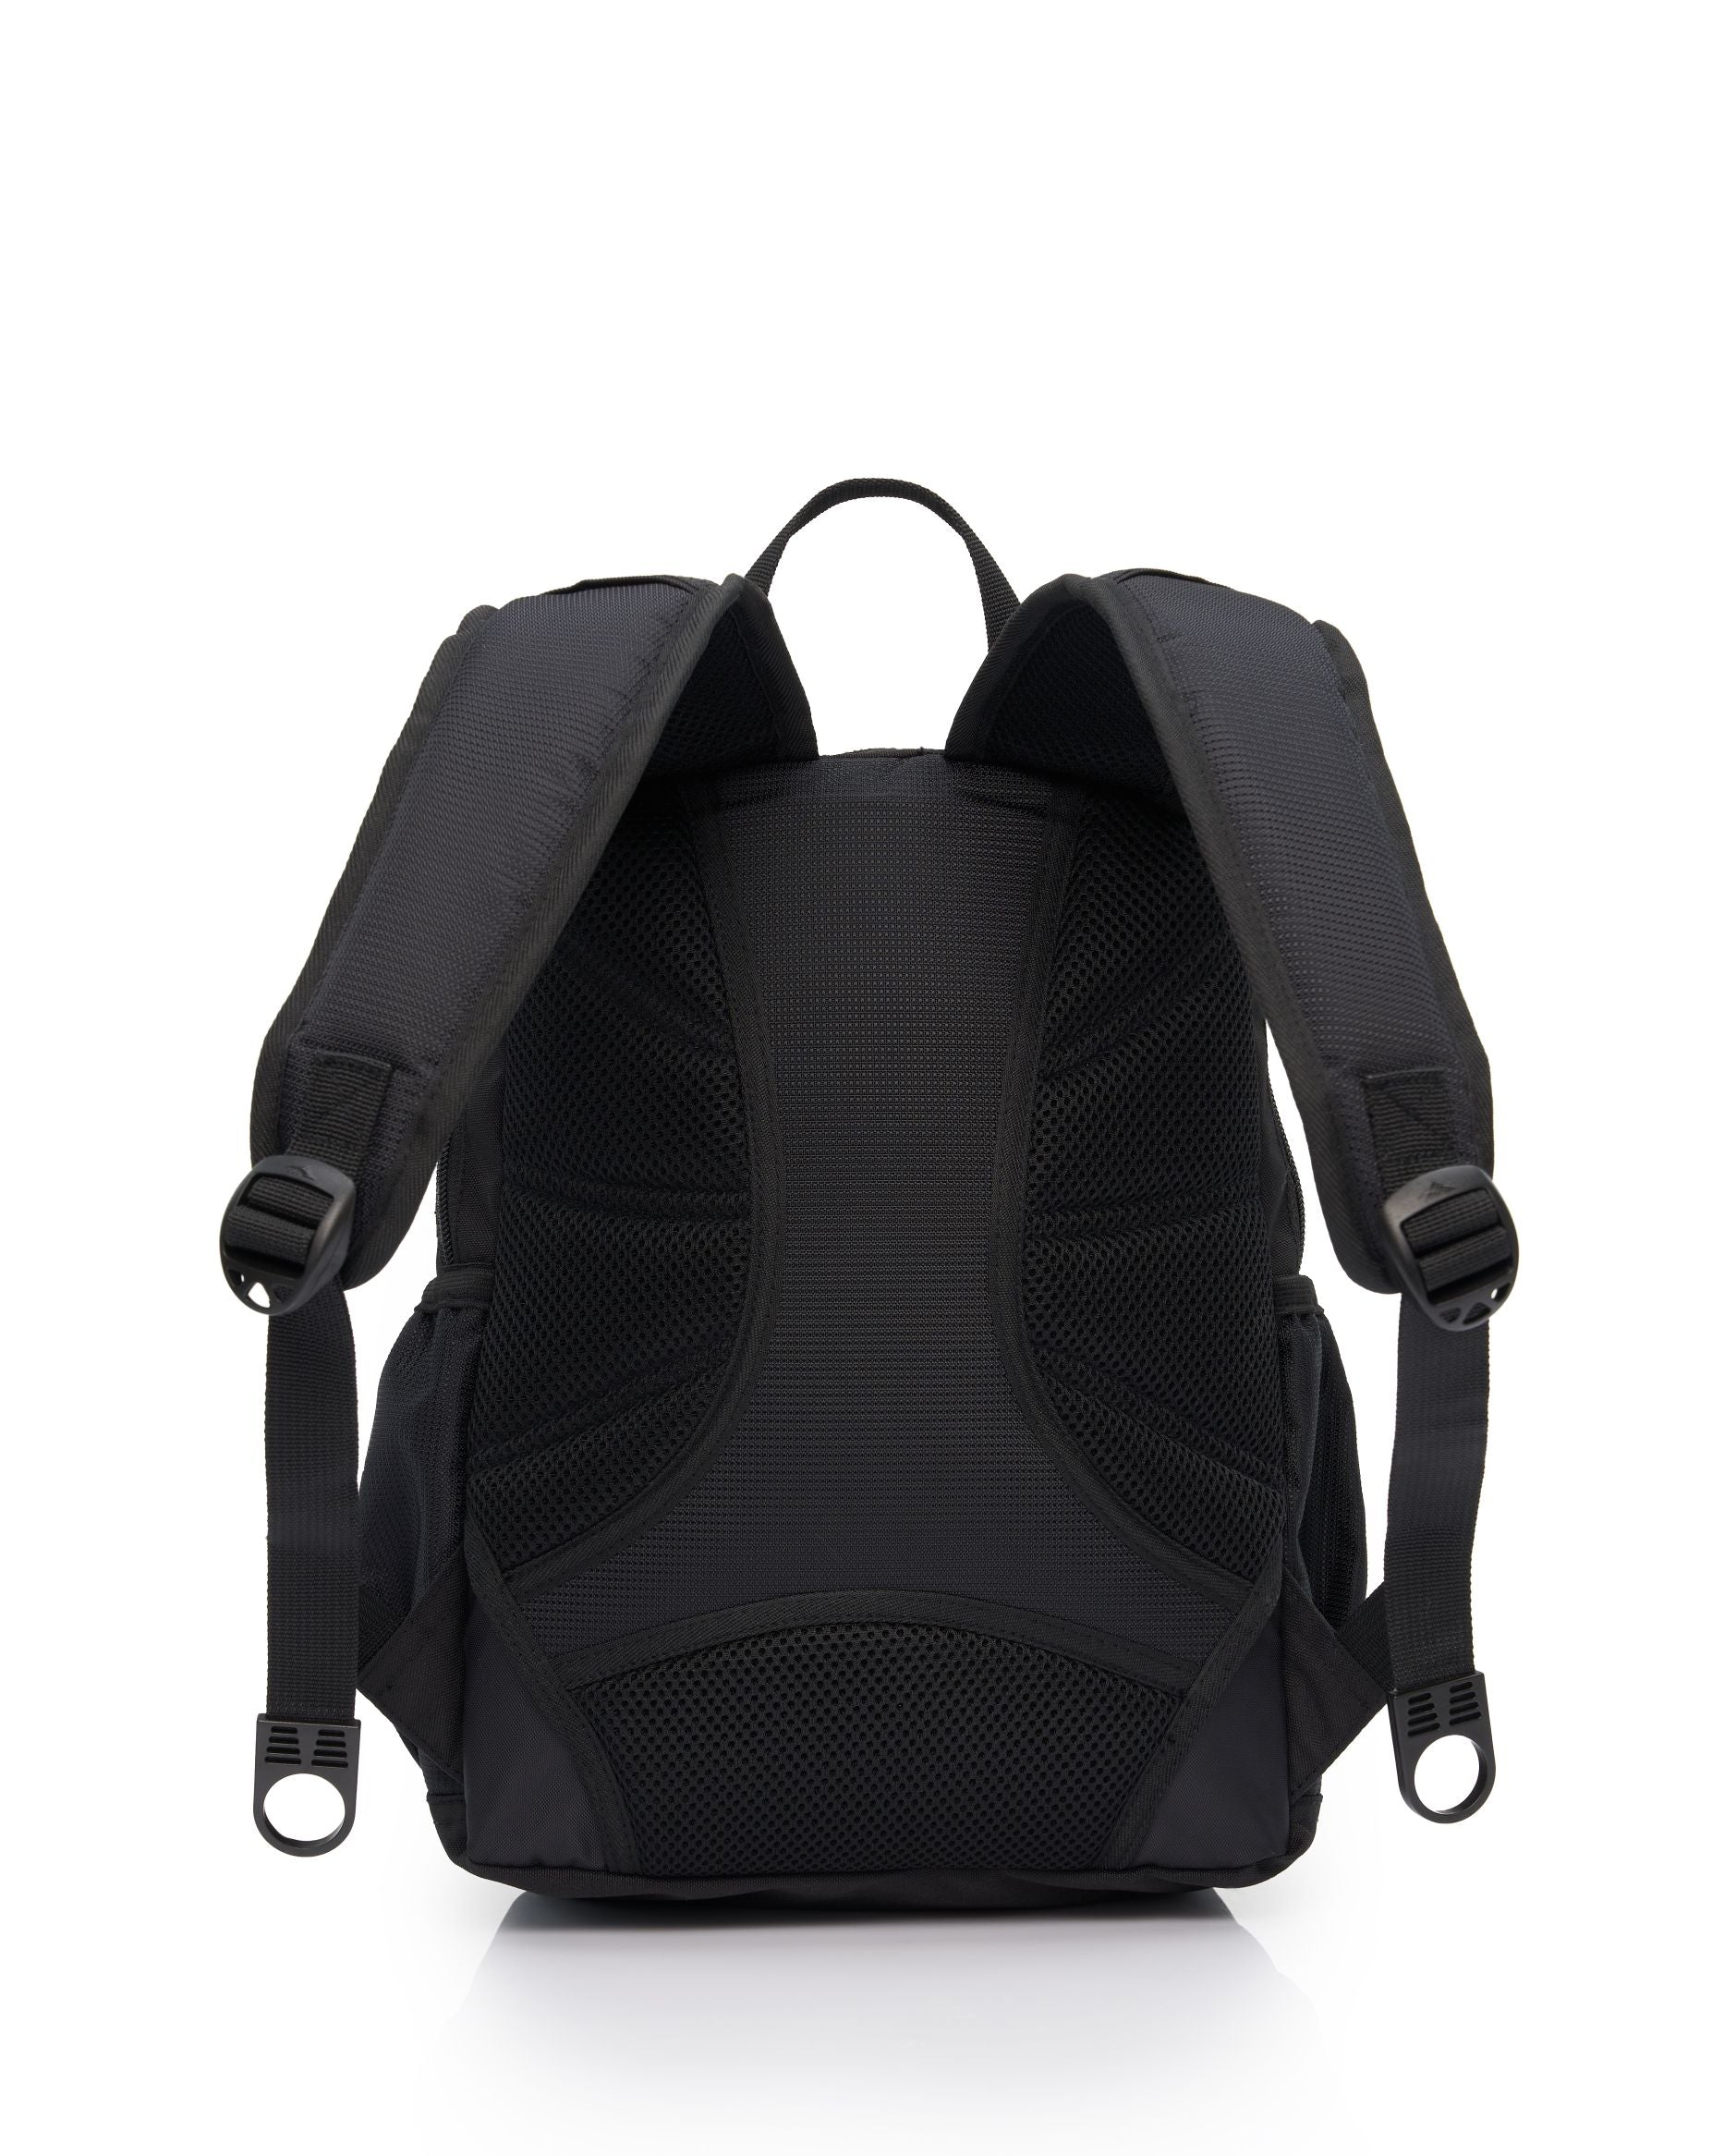 High Sierra - Mini Backpack 2.0 - Black/Silver-4